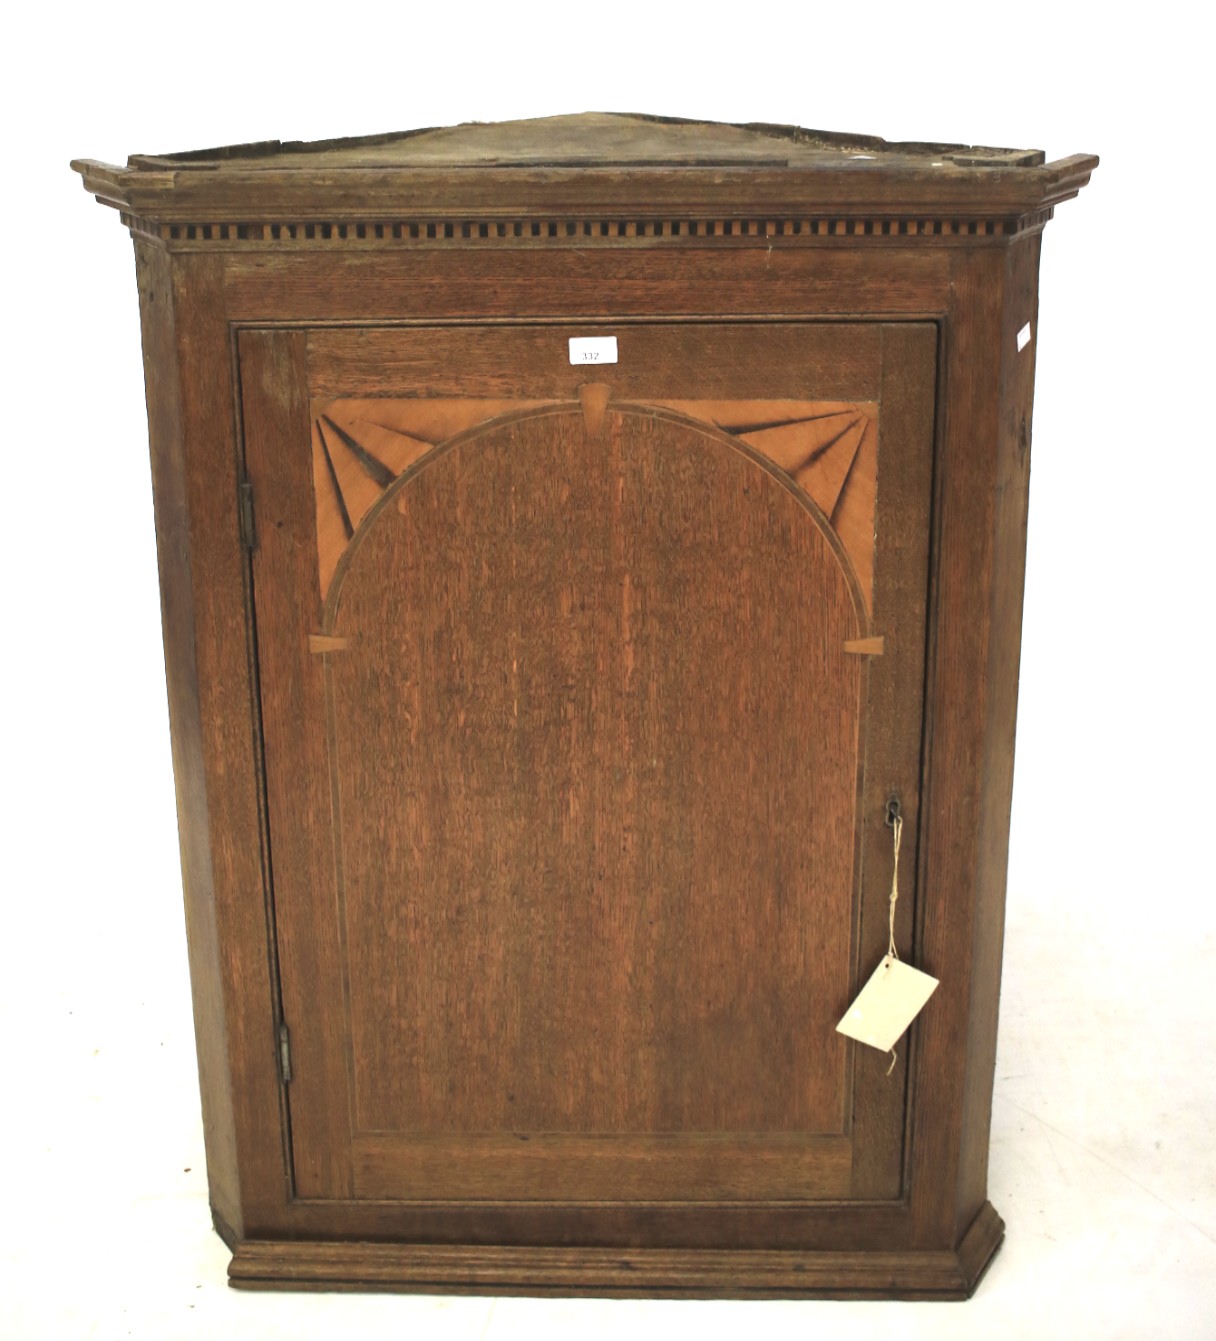 A late 19th century oak corner cupboard.